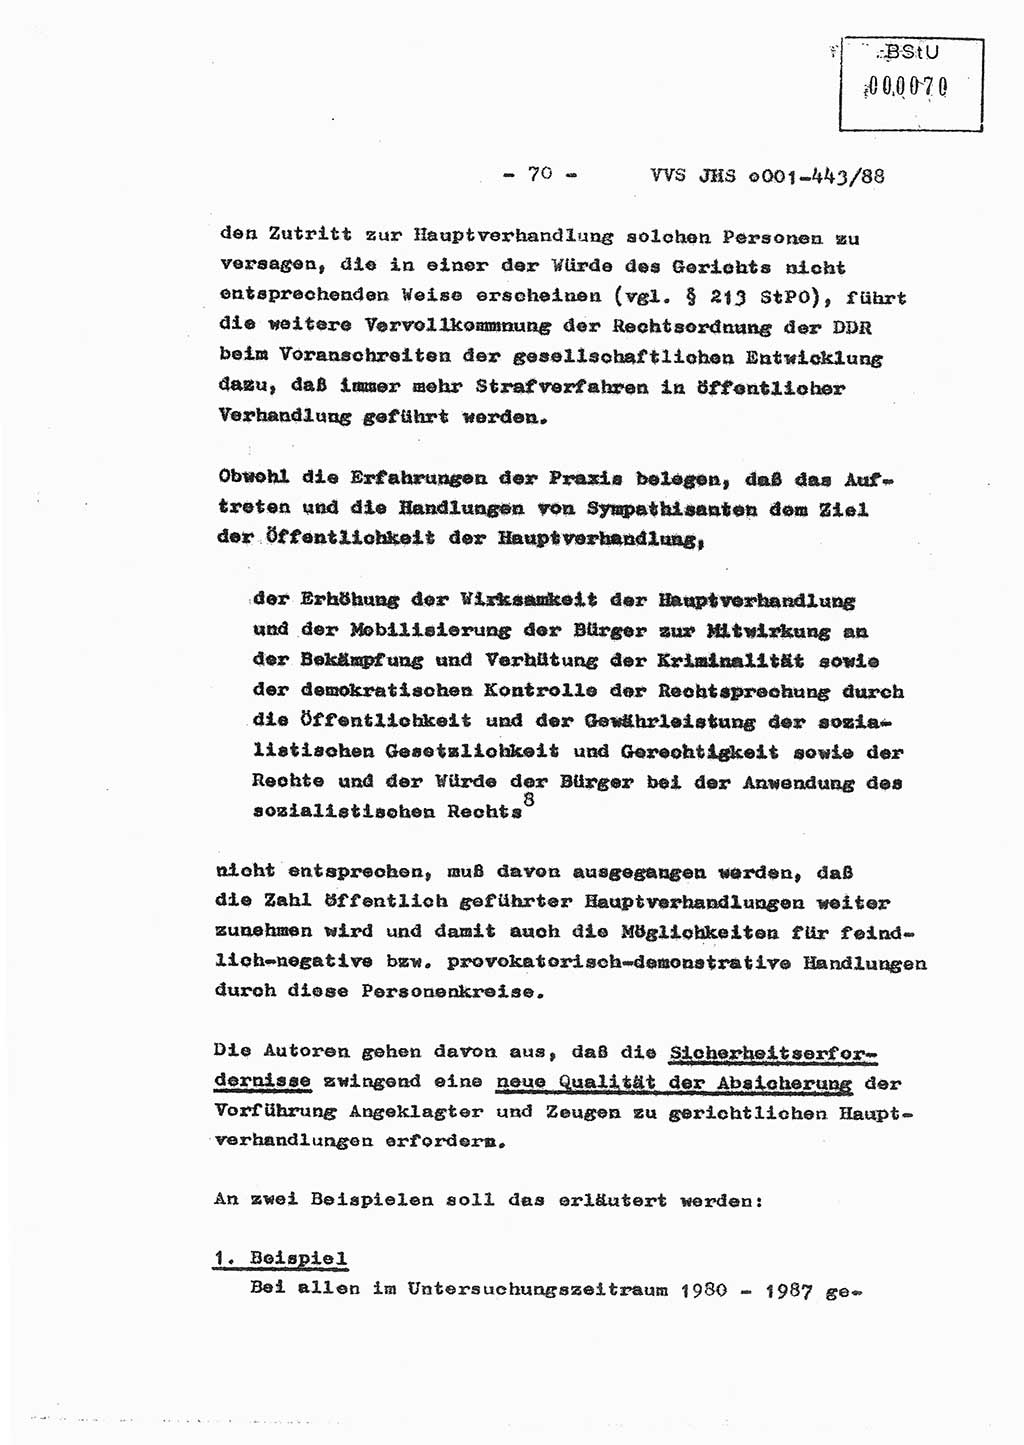 Diplomarbeit Hauptmann Michael Rast (Abt. ⅩⅣ), Major Bernd Rahaus (Abt. ⅩⅣ), Ministerium für Staatssicherheit (MfS) [Deutsche Demokratische Republik (DDR)], Juristische Hochschule (JHS), Vertrauliche Verschlußsache (VVS) o001-443/88, Potsdam 1988, Seite 70 (Dipl.-Arb. MfS DDR JHS VVS o001-443/88 1988, S. 70)